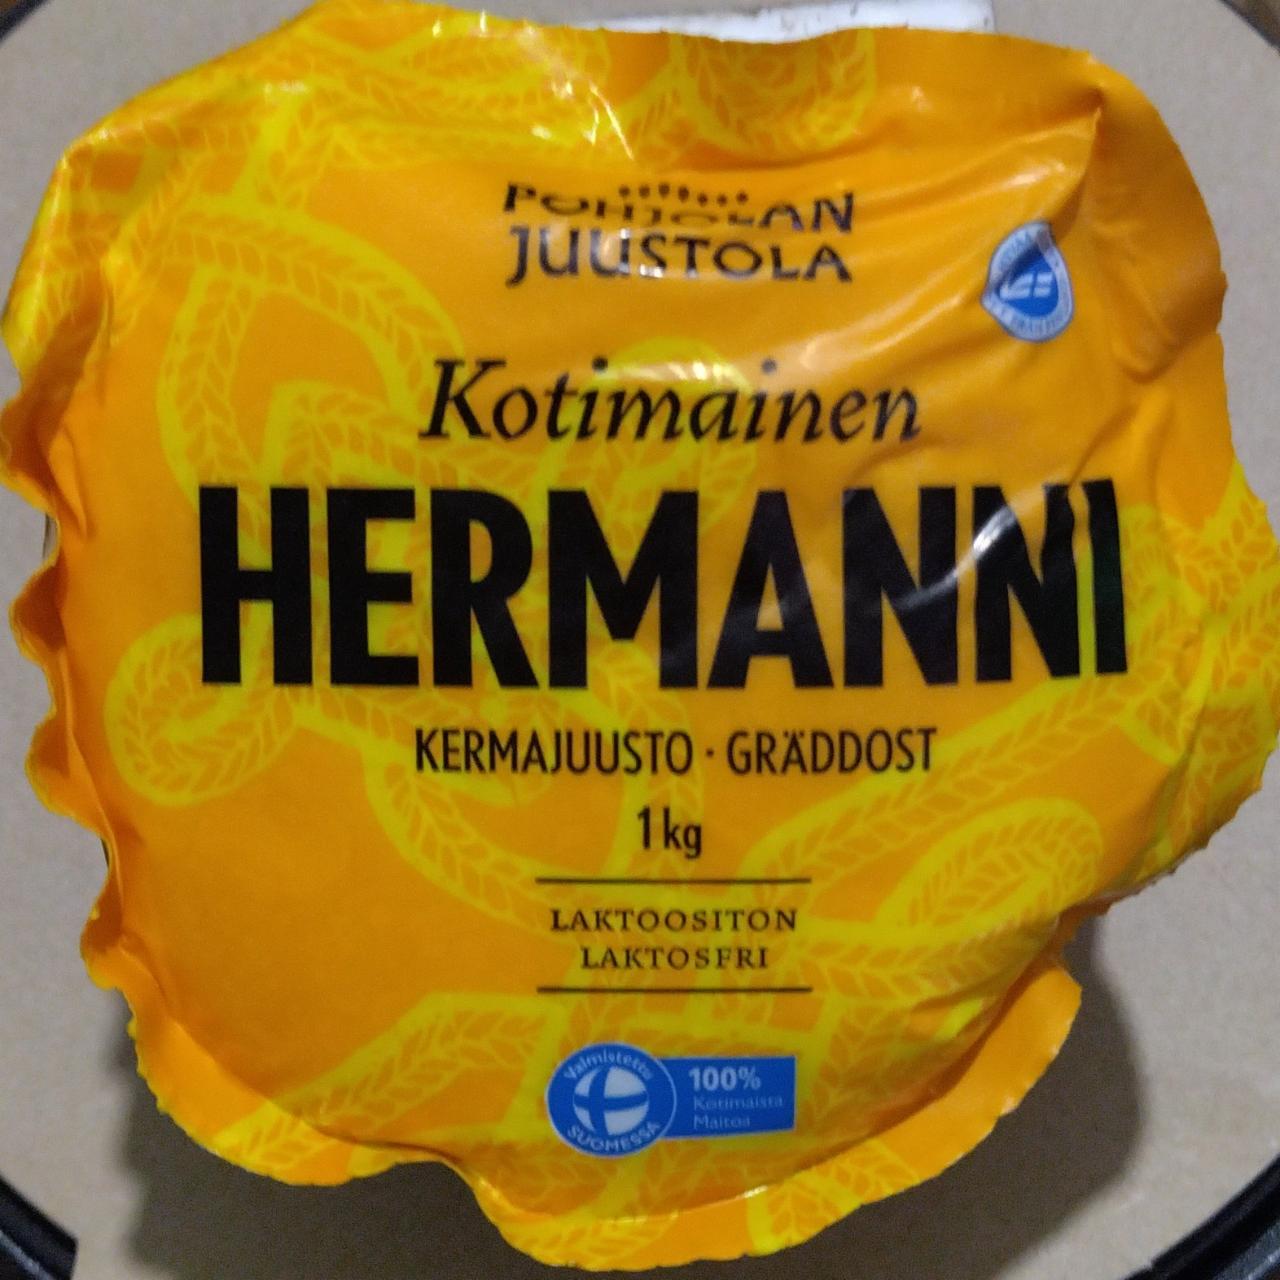 Фото - Сыр безлактозный Kotimainen Hermanni Pohjolan Juustola